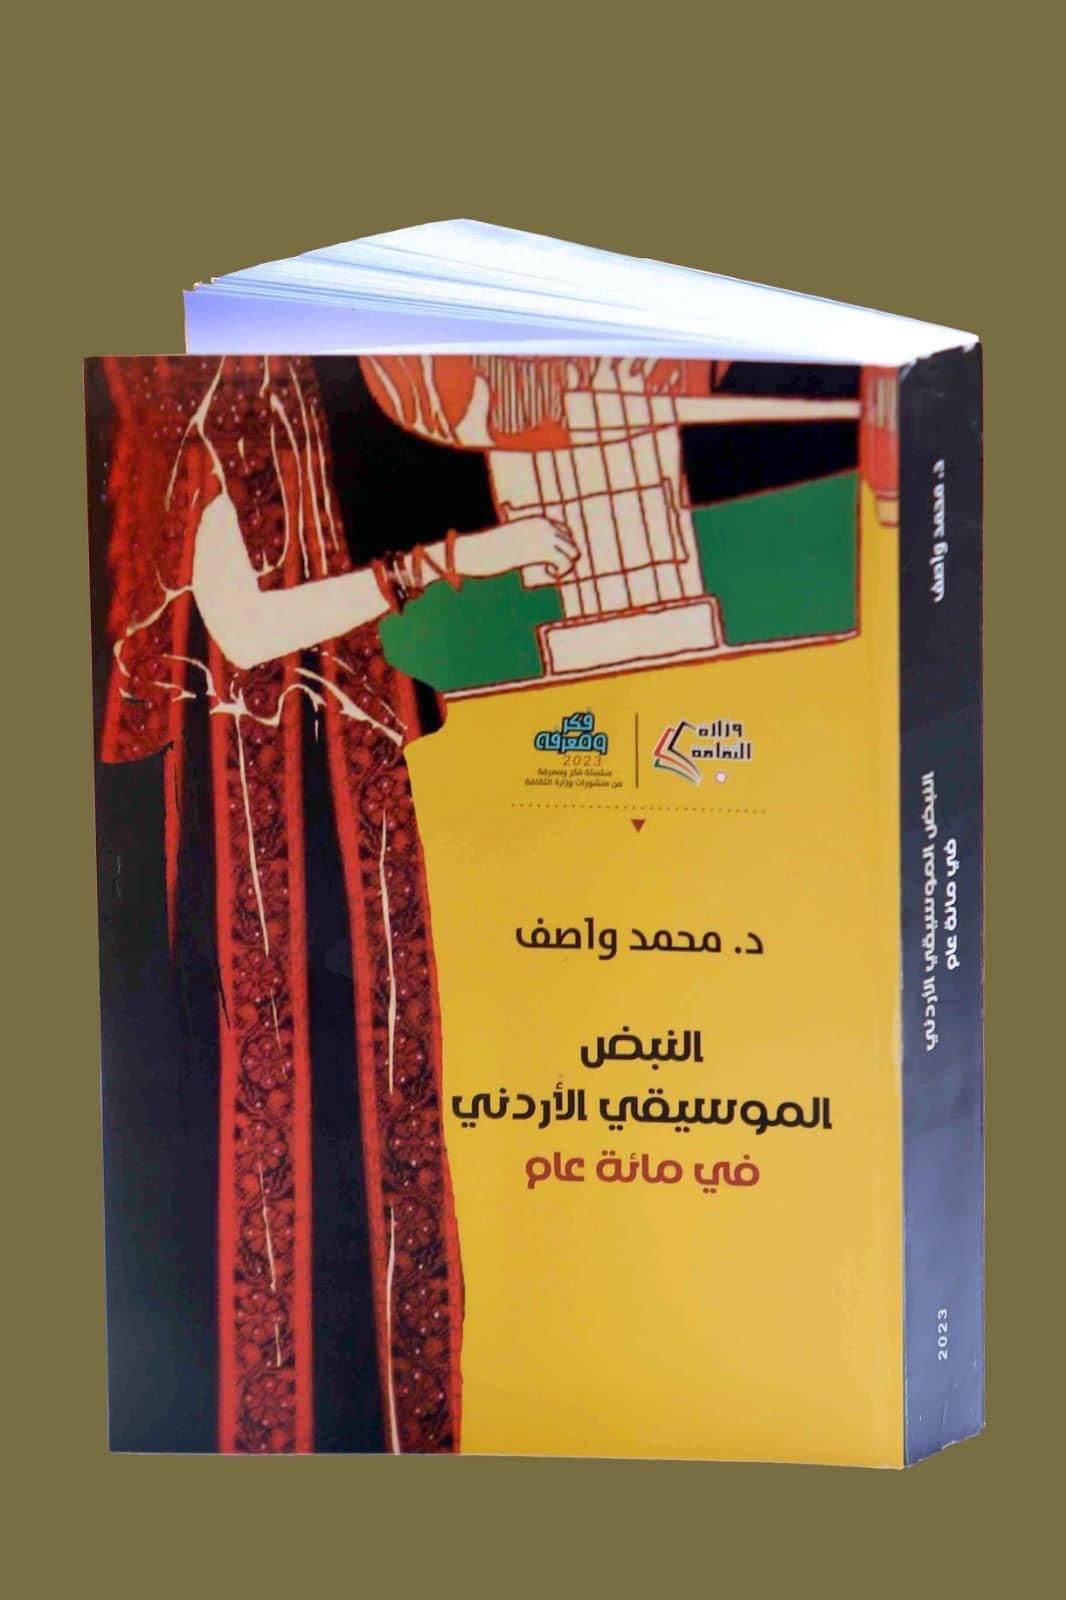 الدكتور محمد واصف يعلن عن صدور كتابه الجديد "النبض الموسيقي الأردني في مائة عام"